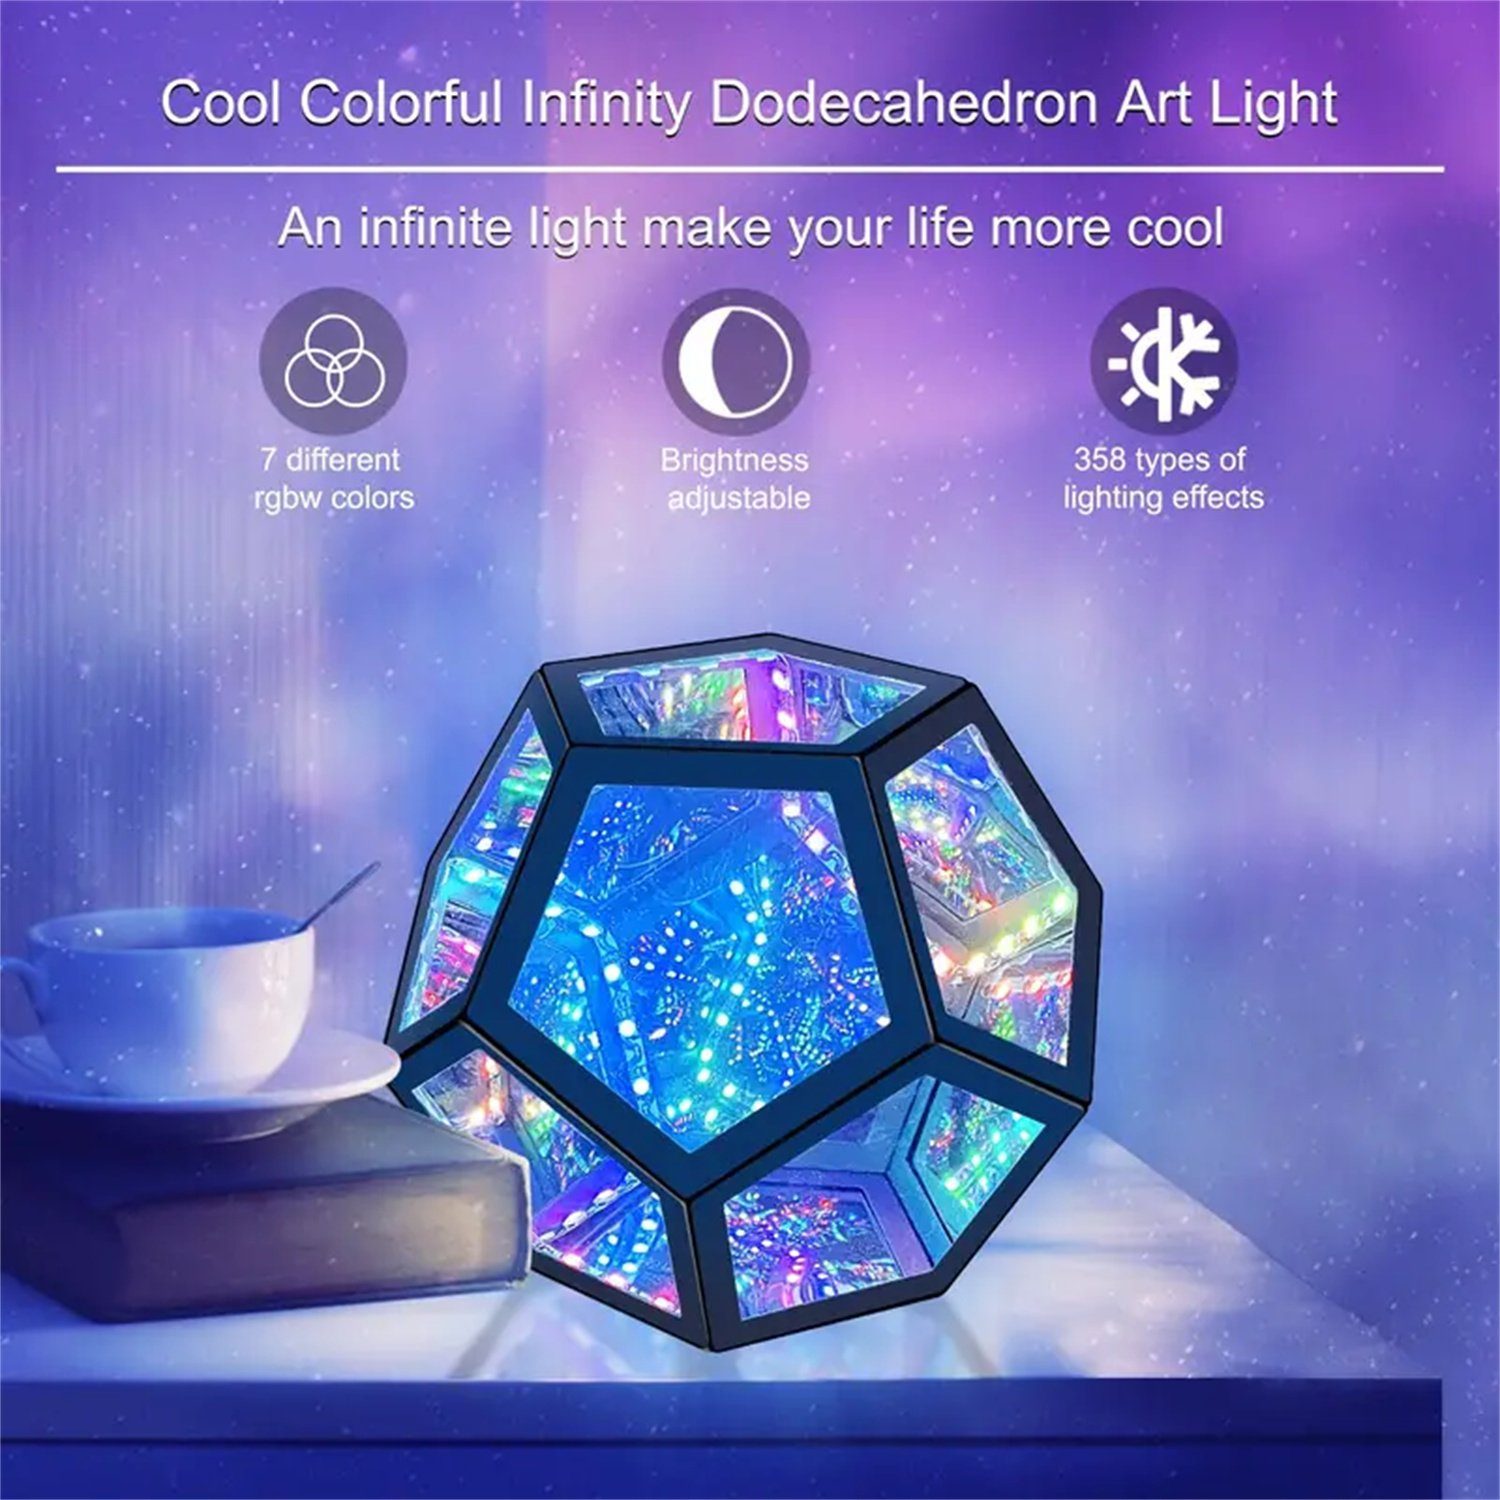 autolock LED Licht Dodekaeder-Tischlampe, Nachtlicht Farbwechselnde buntes